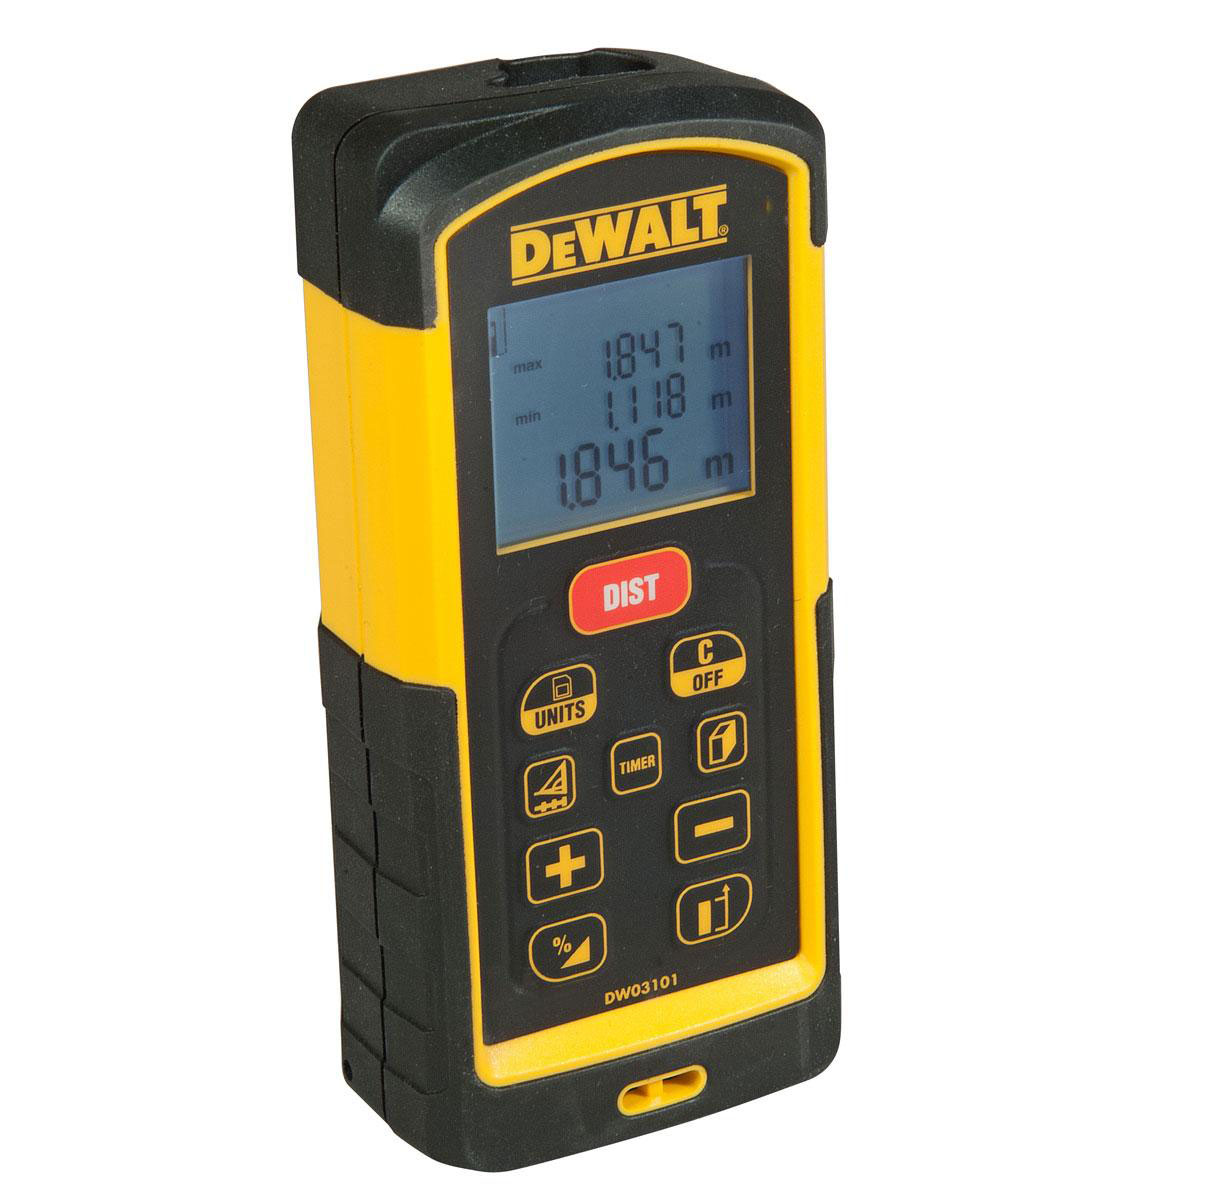 DeWALT DW03101-XJ - Laser Distance Meter 100m (330ft)